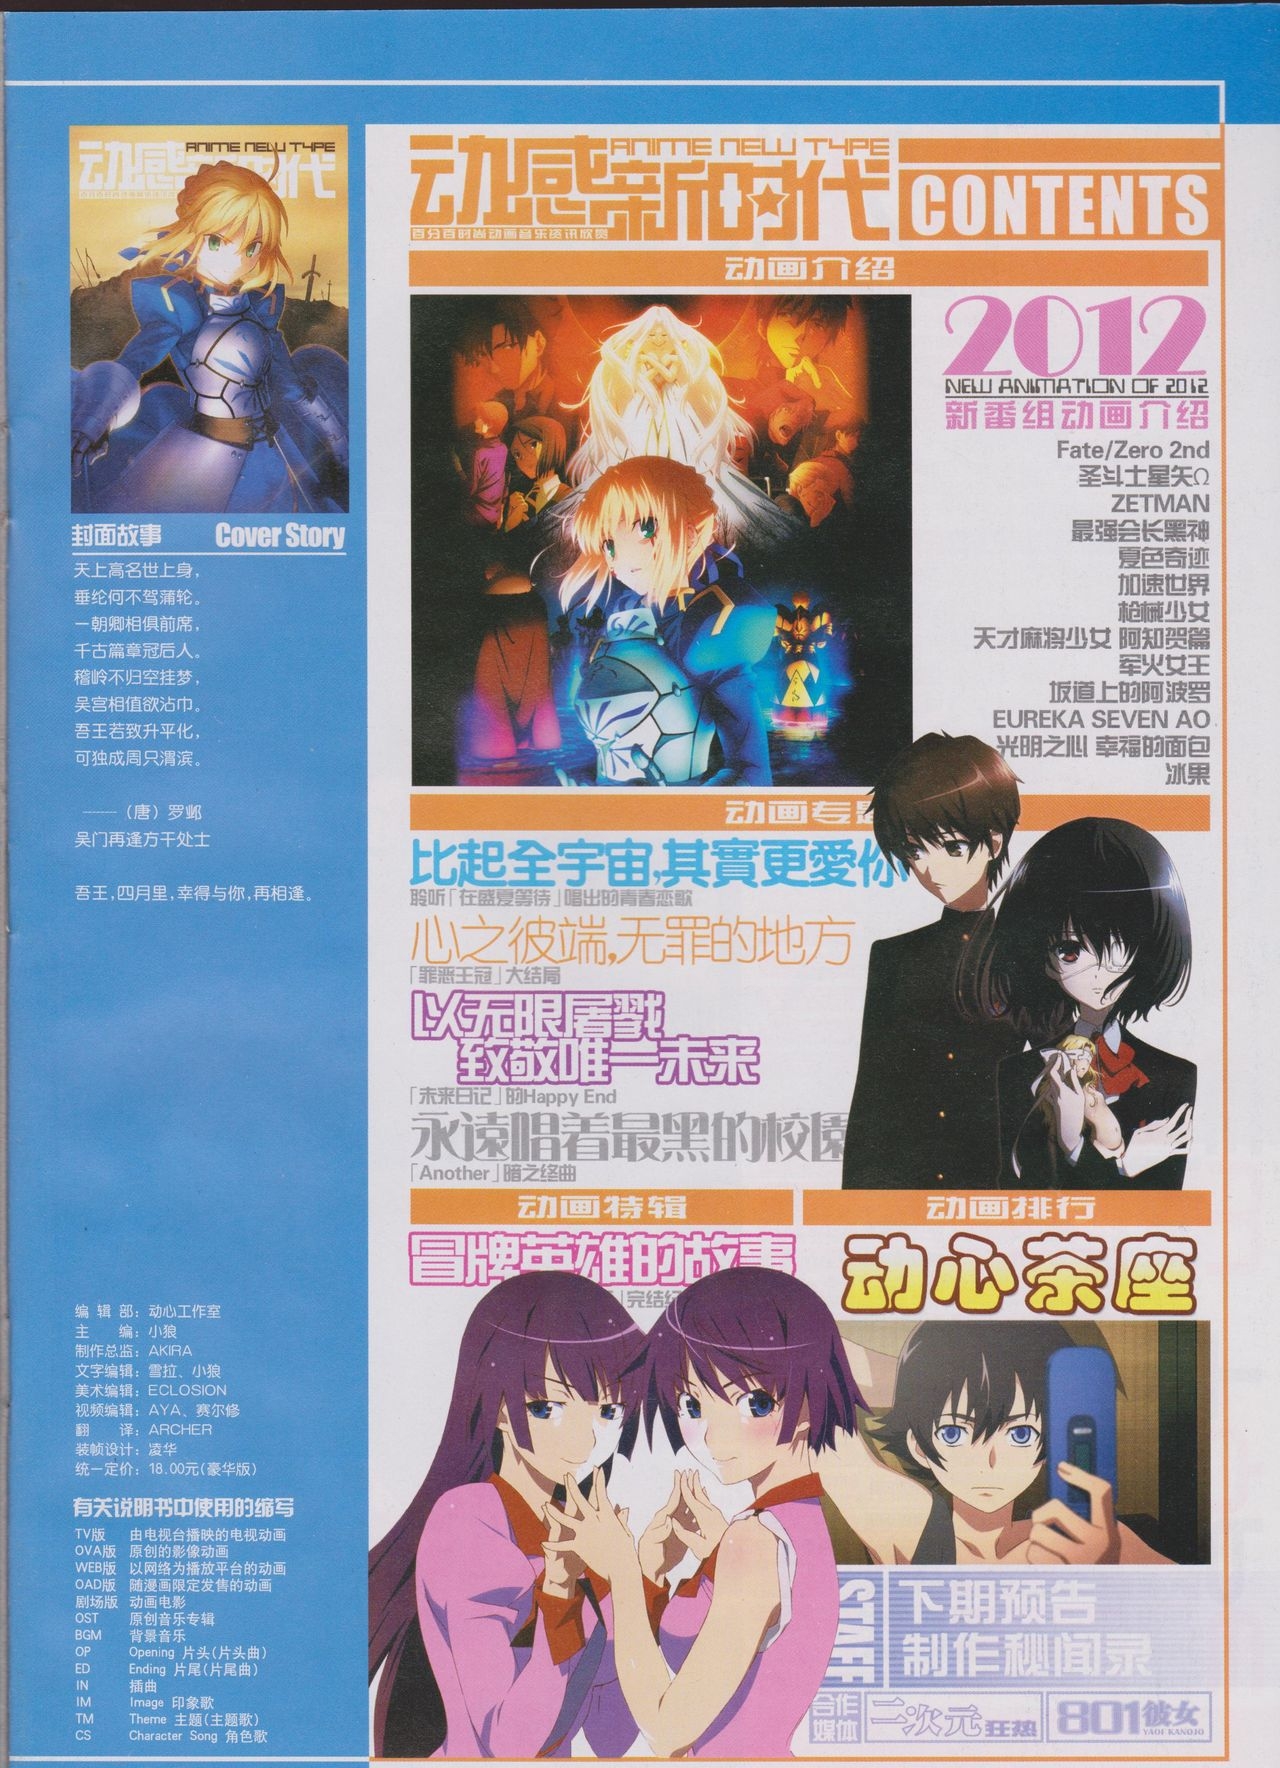 Anime New Type Vol.111 2